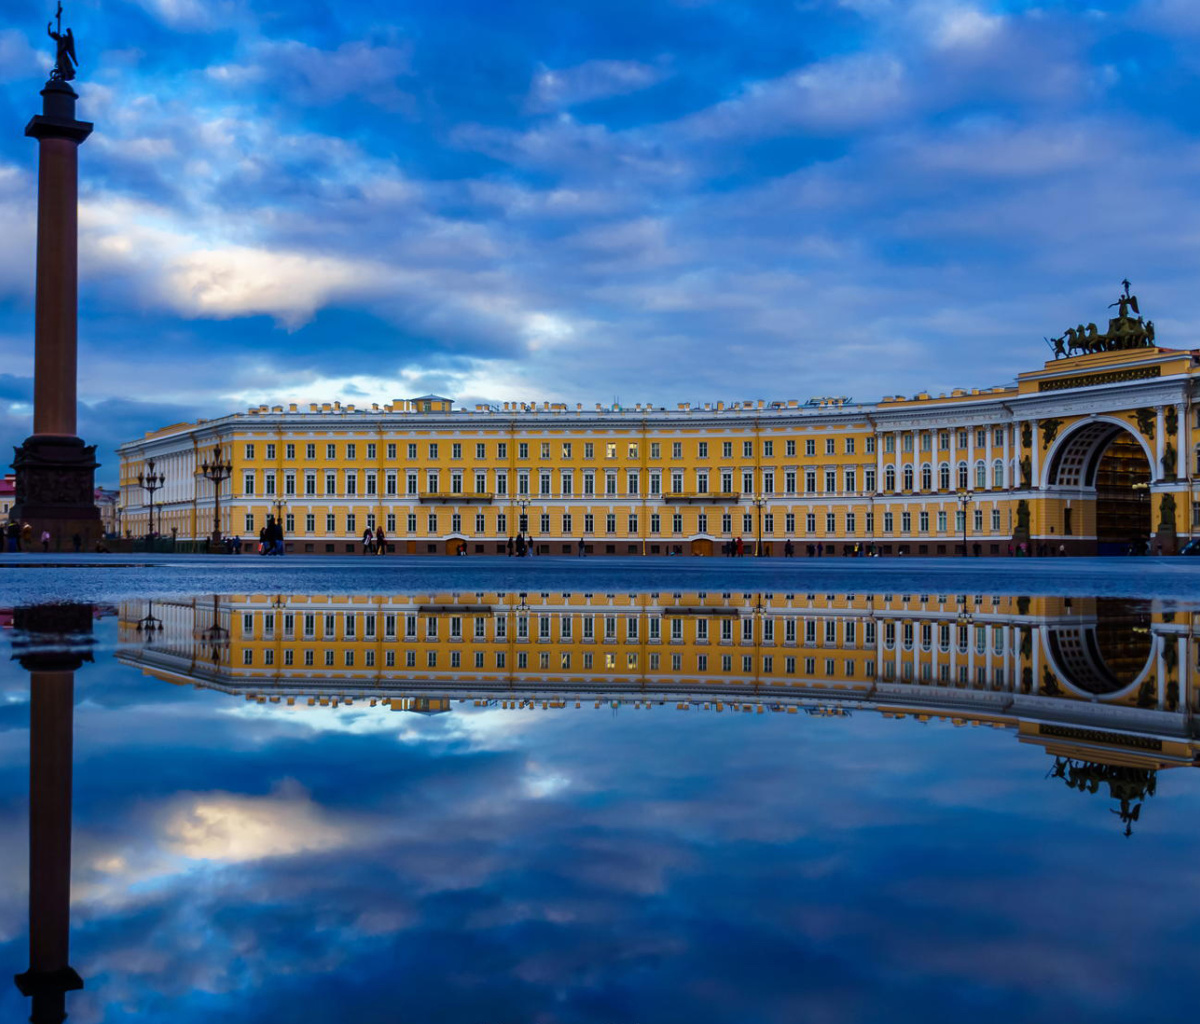 Saint Petersburg, Winter Palace, Alexander Column screenshot #1 1200x1024